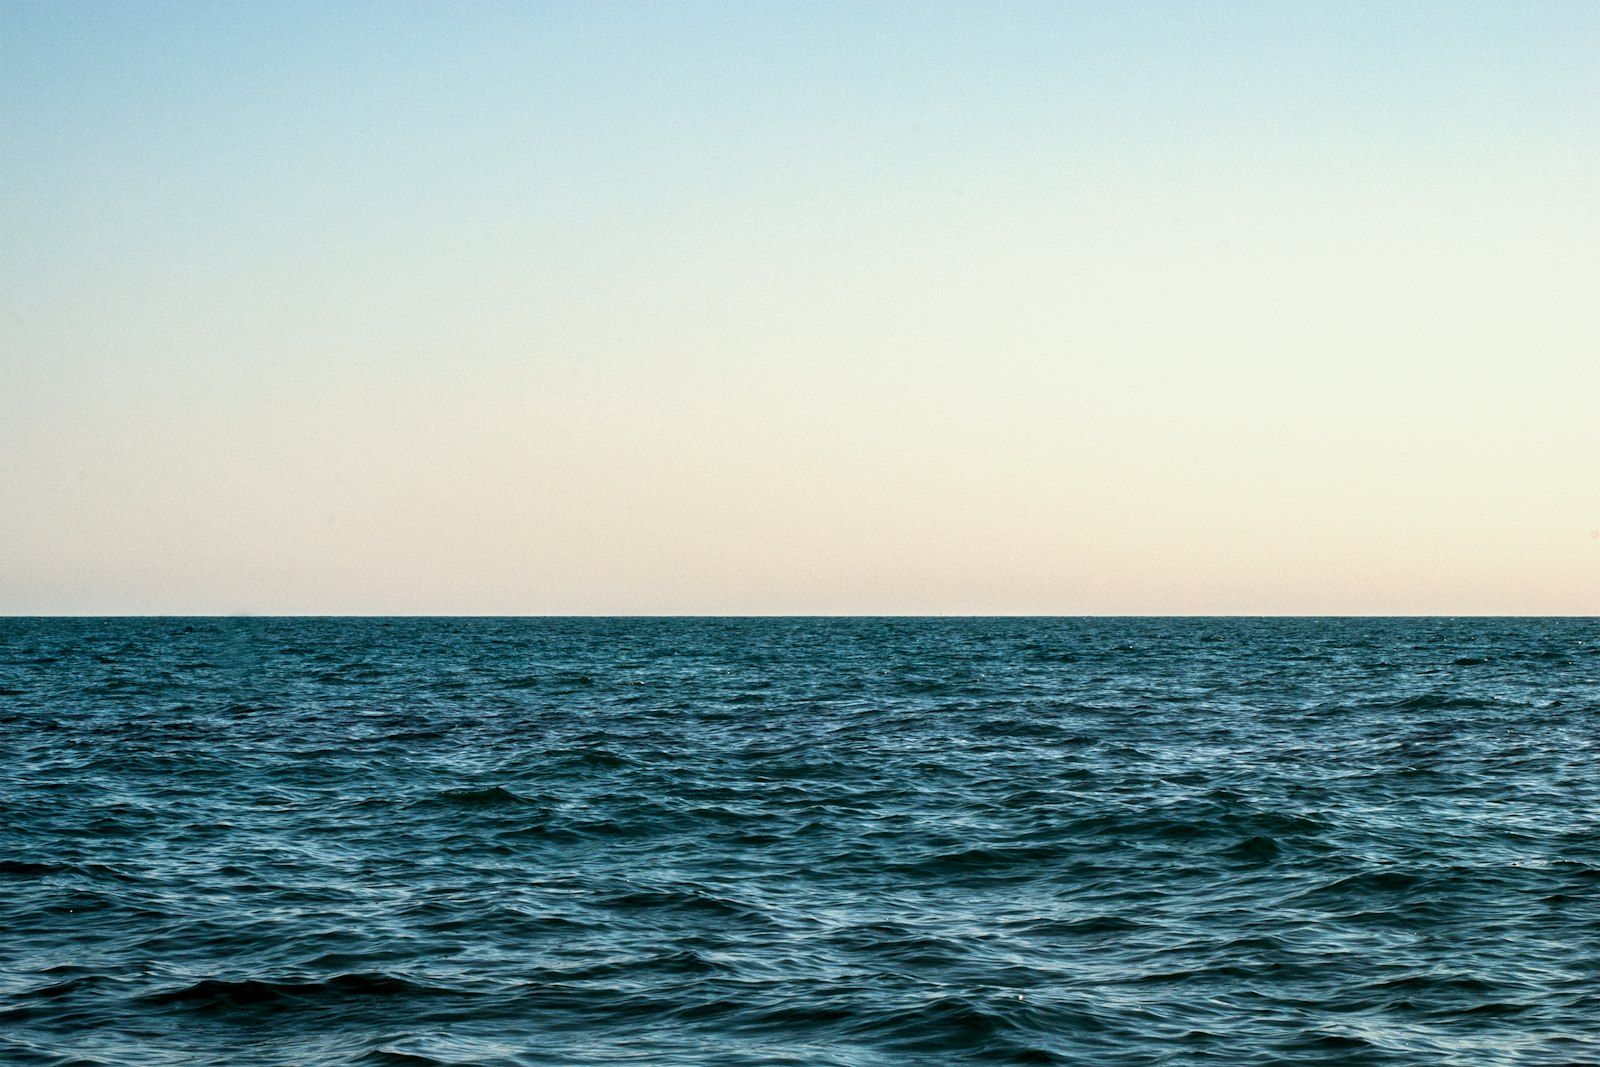 AF Zoom-Nikkor 35-70mm f/3.3-4.5 N sample photo. Calm ocean photography